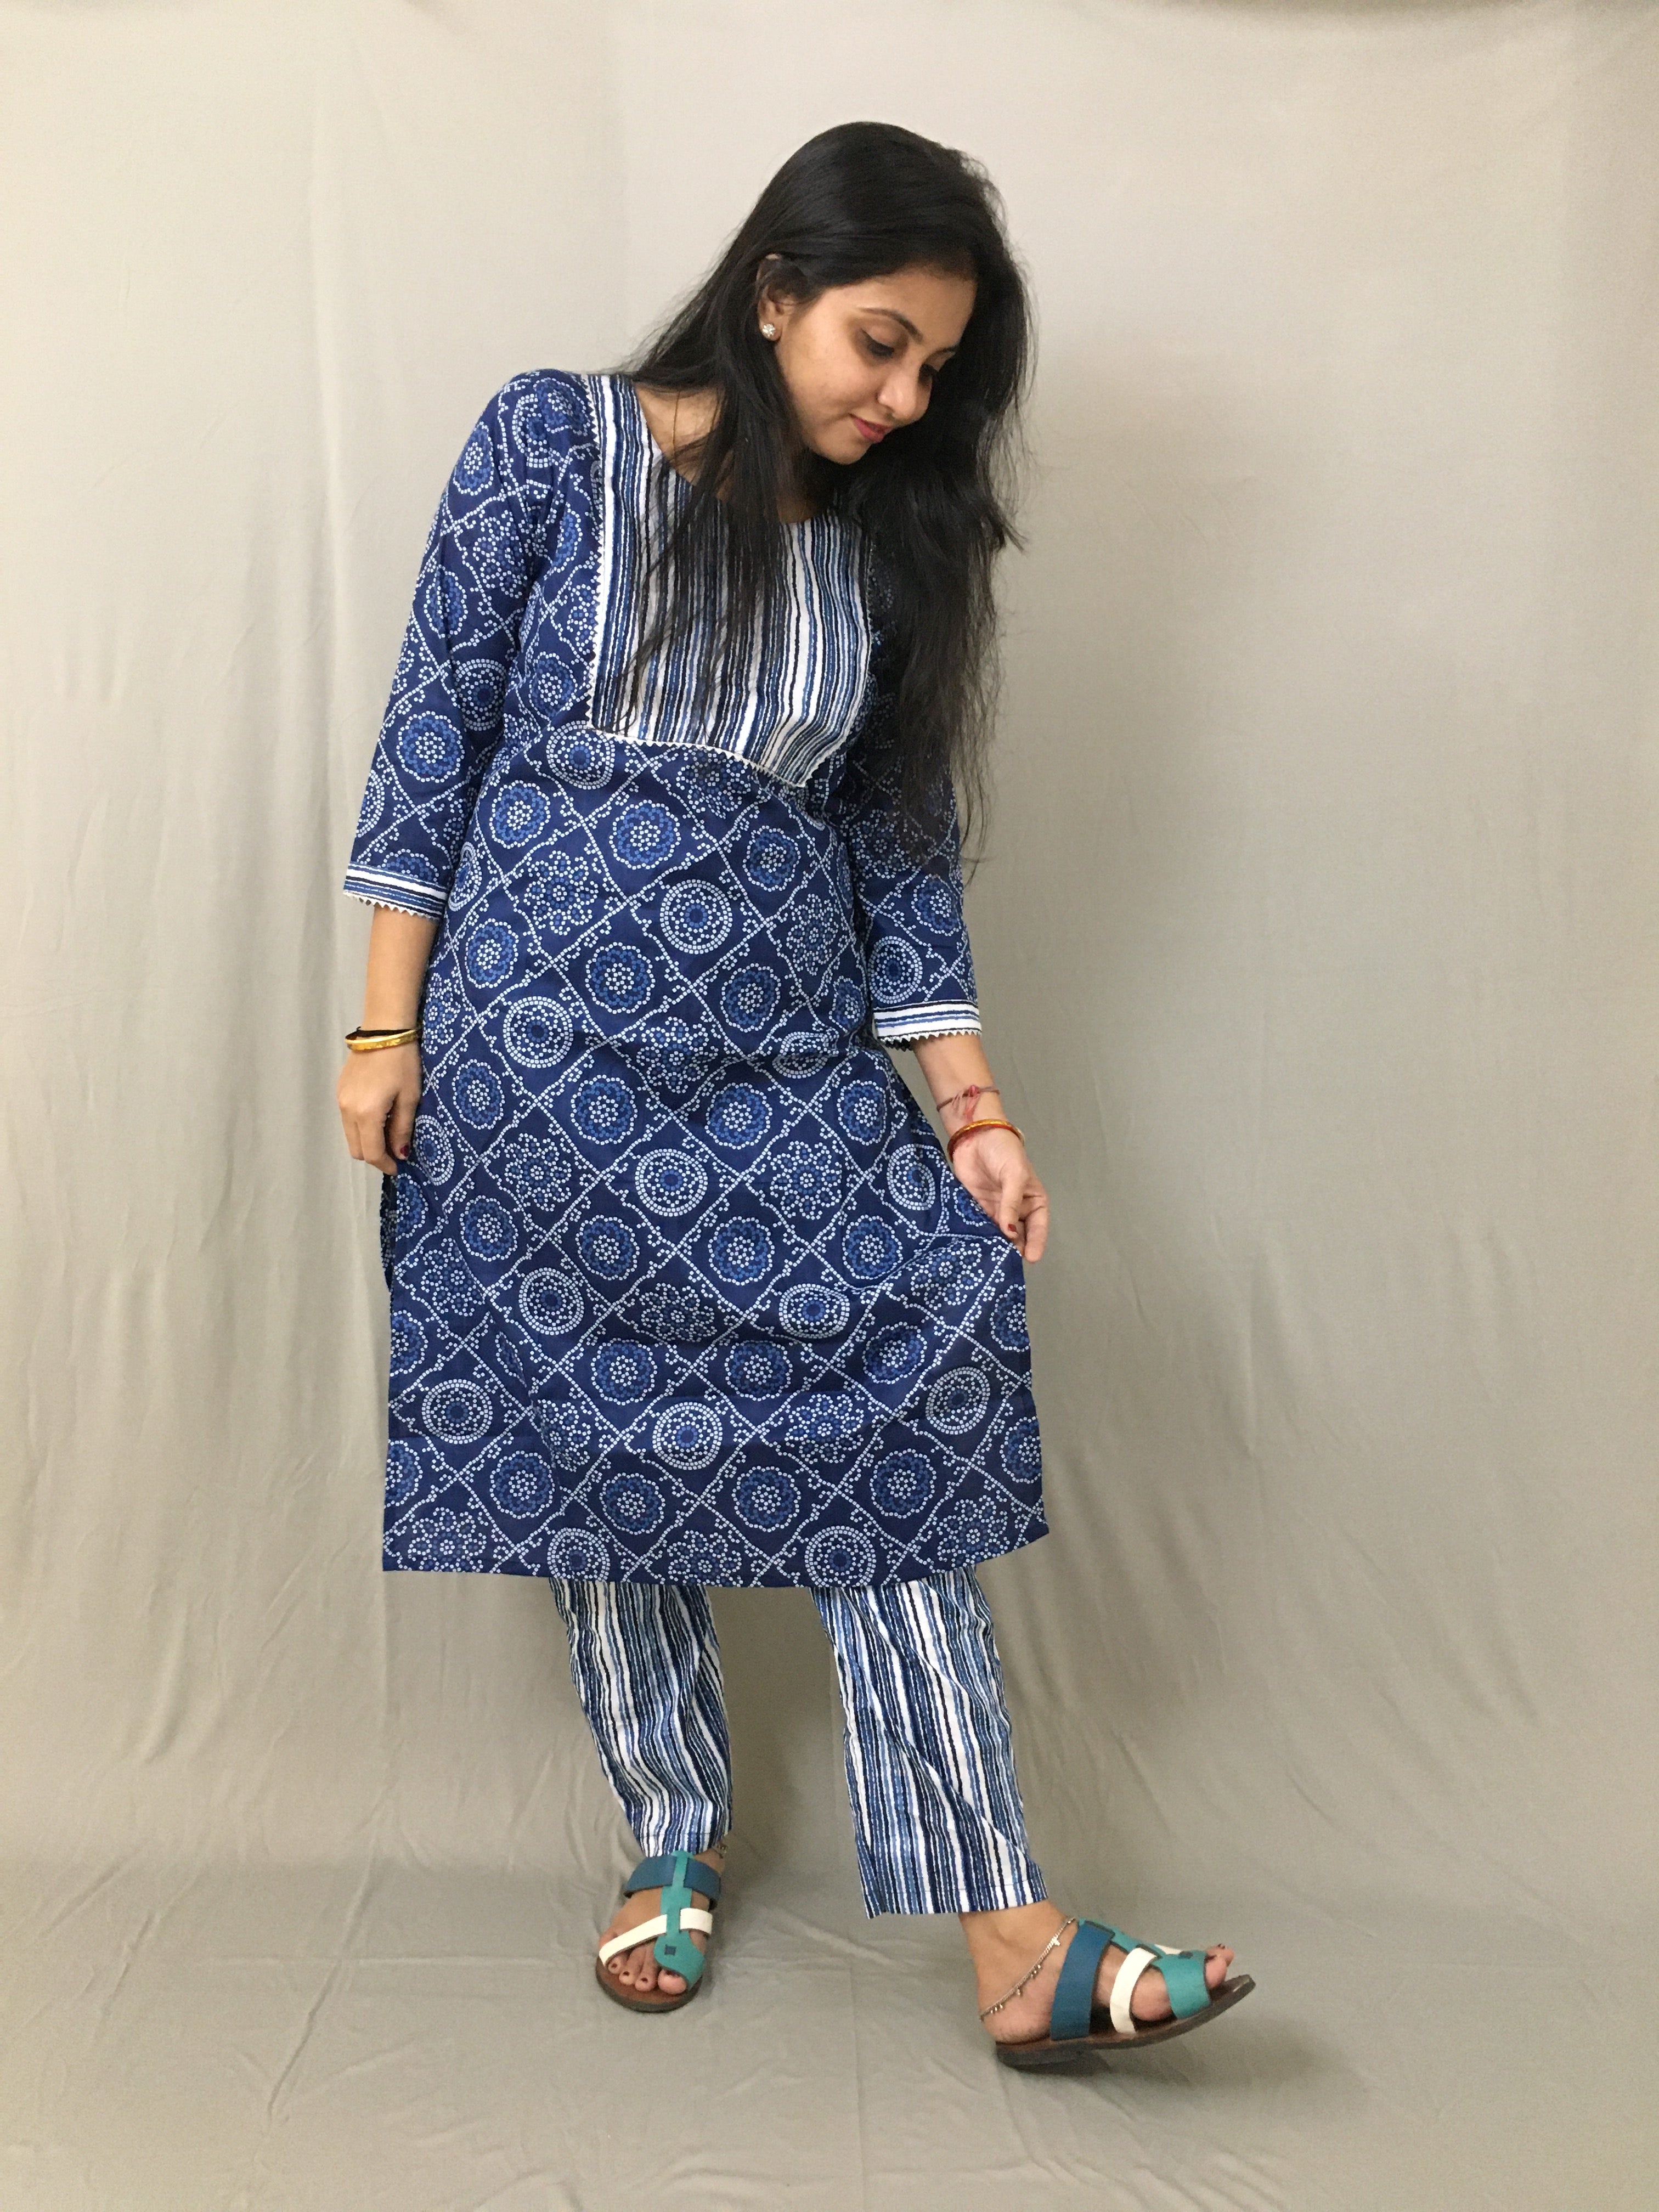 Cotton Ladies Bandhani Kurti, Size: S To XXL at Rs 425 in Jaipur | ID:  26171053733